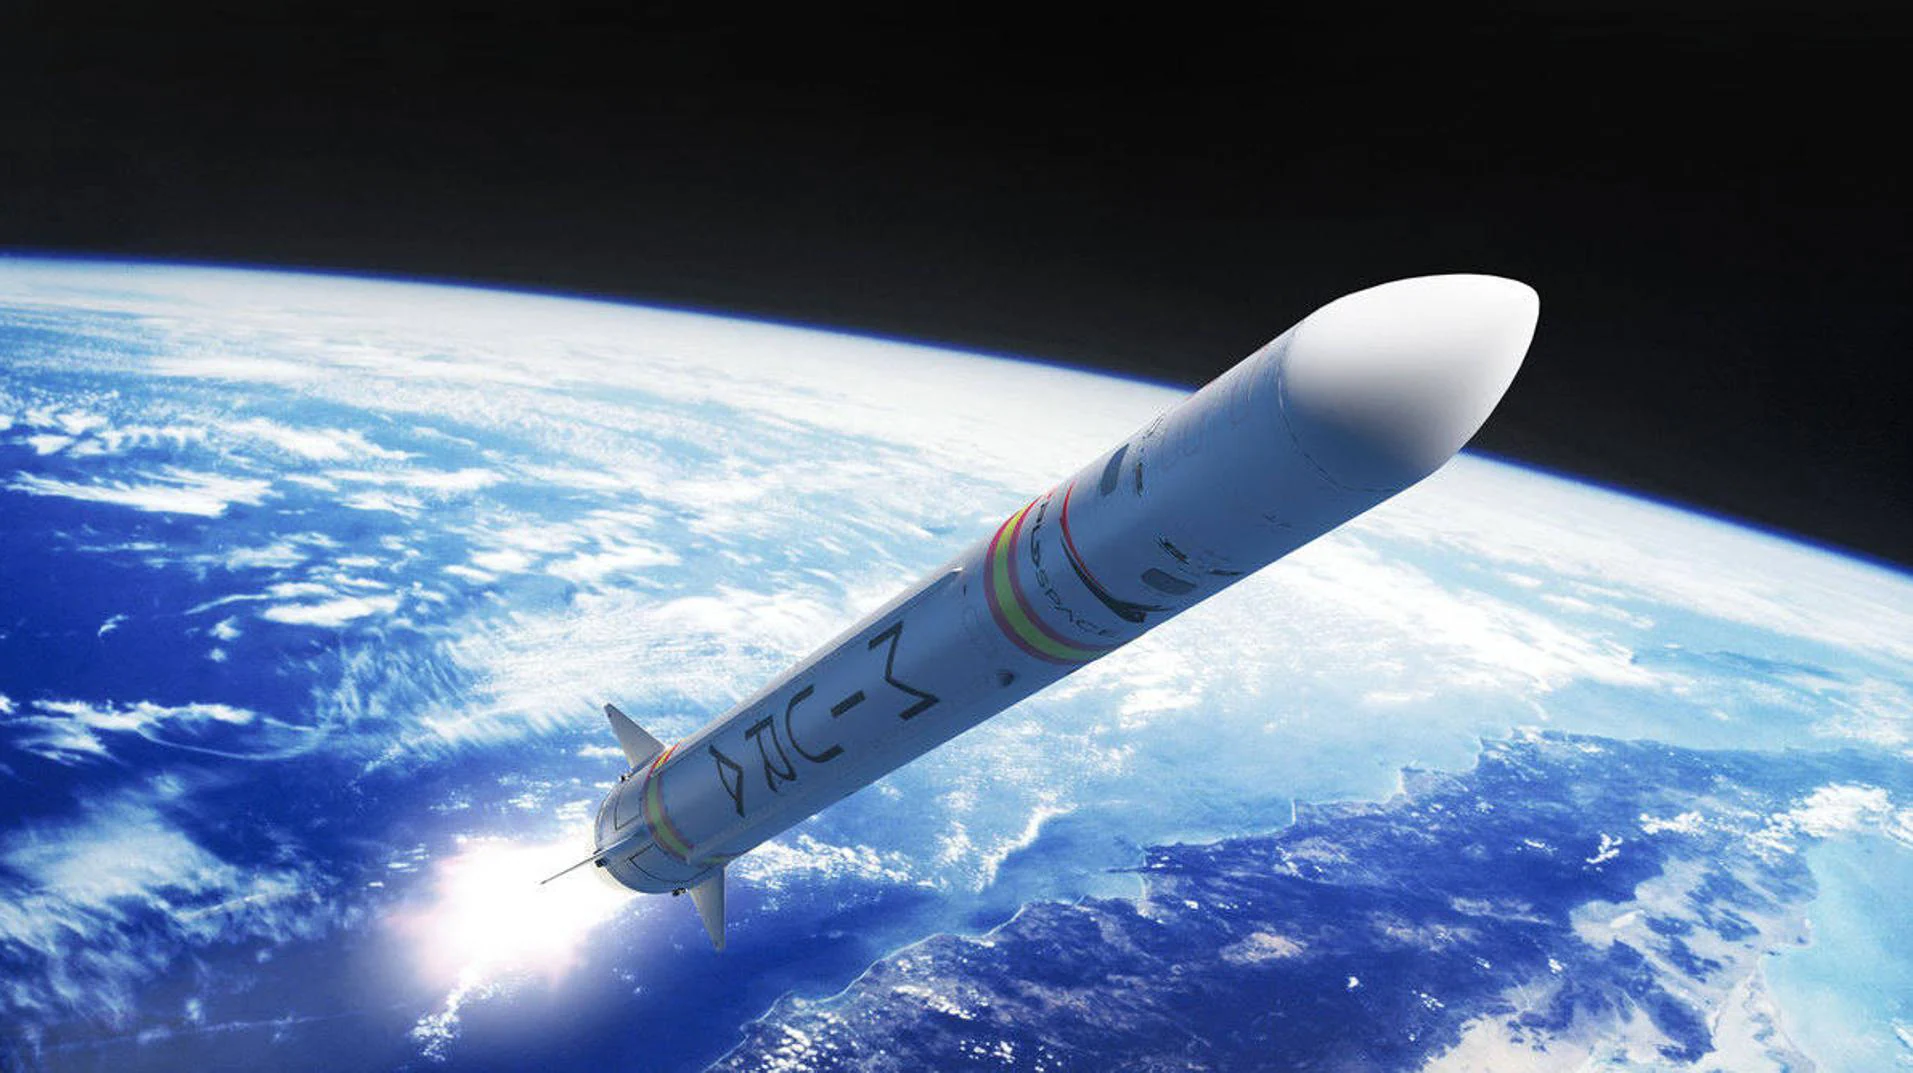 España lanzará el cohete de tres etapas Miura 1 para sumarse a la carrera espacial